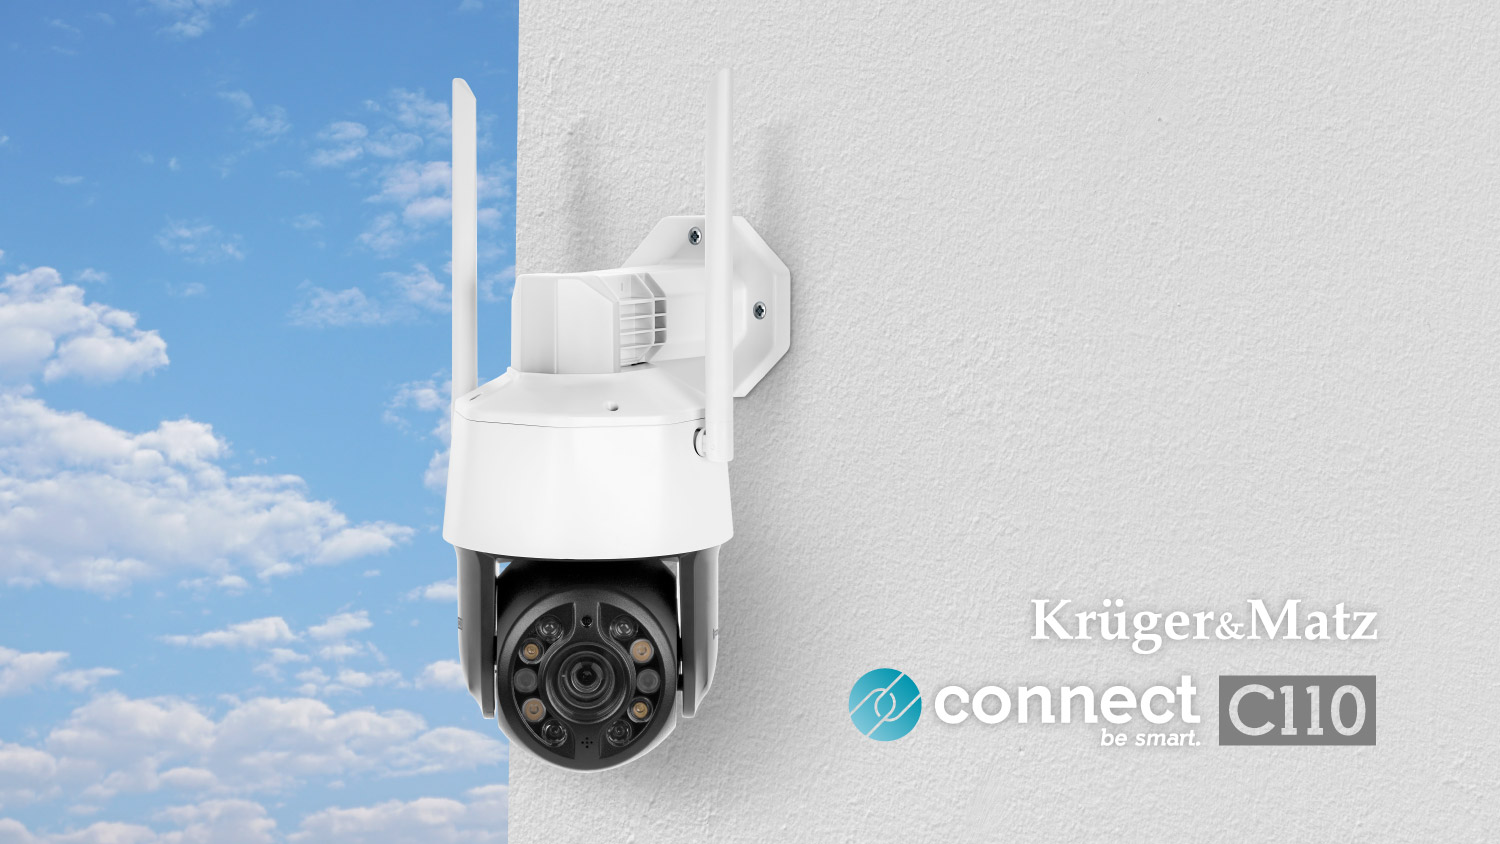 Camera Wi-Fi pentru exterior Kruger&Matz Connect C110